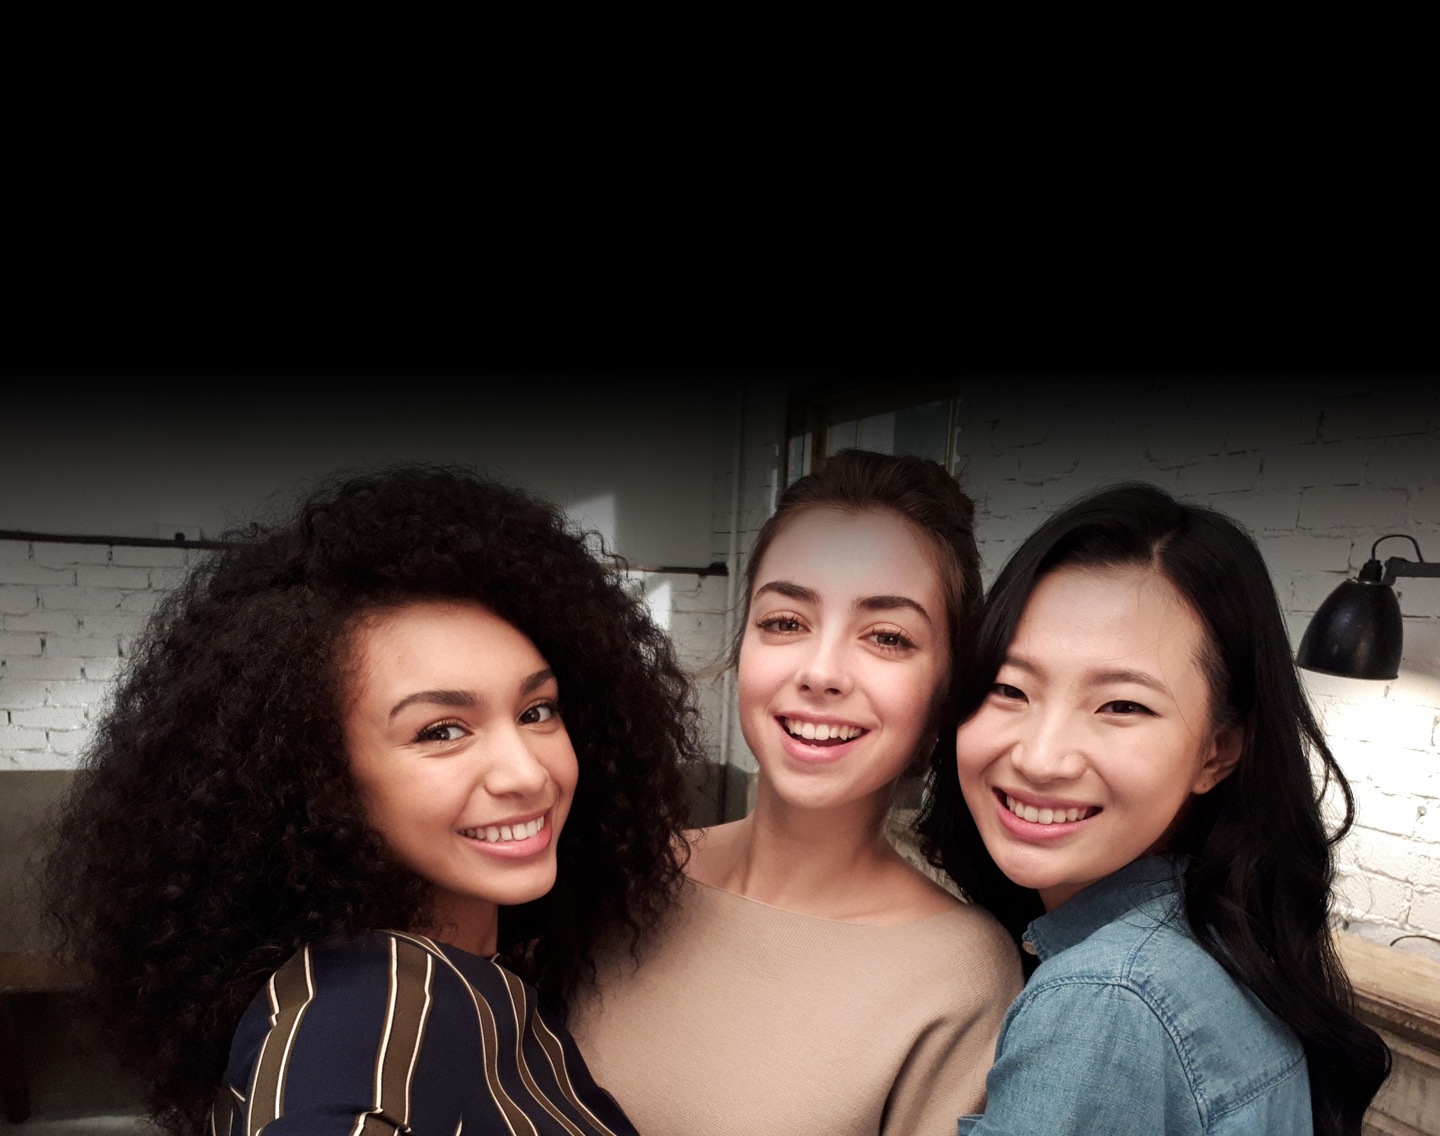 Селфі-фото трьох жінок, зроблене в умовах недостатньої освітленості, щоб показати розширені функціональні можливості камери Galaxy A5 (2017).